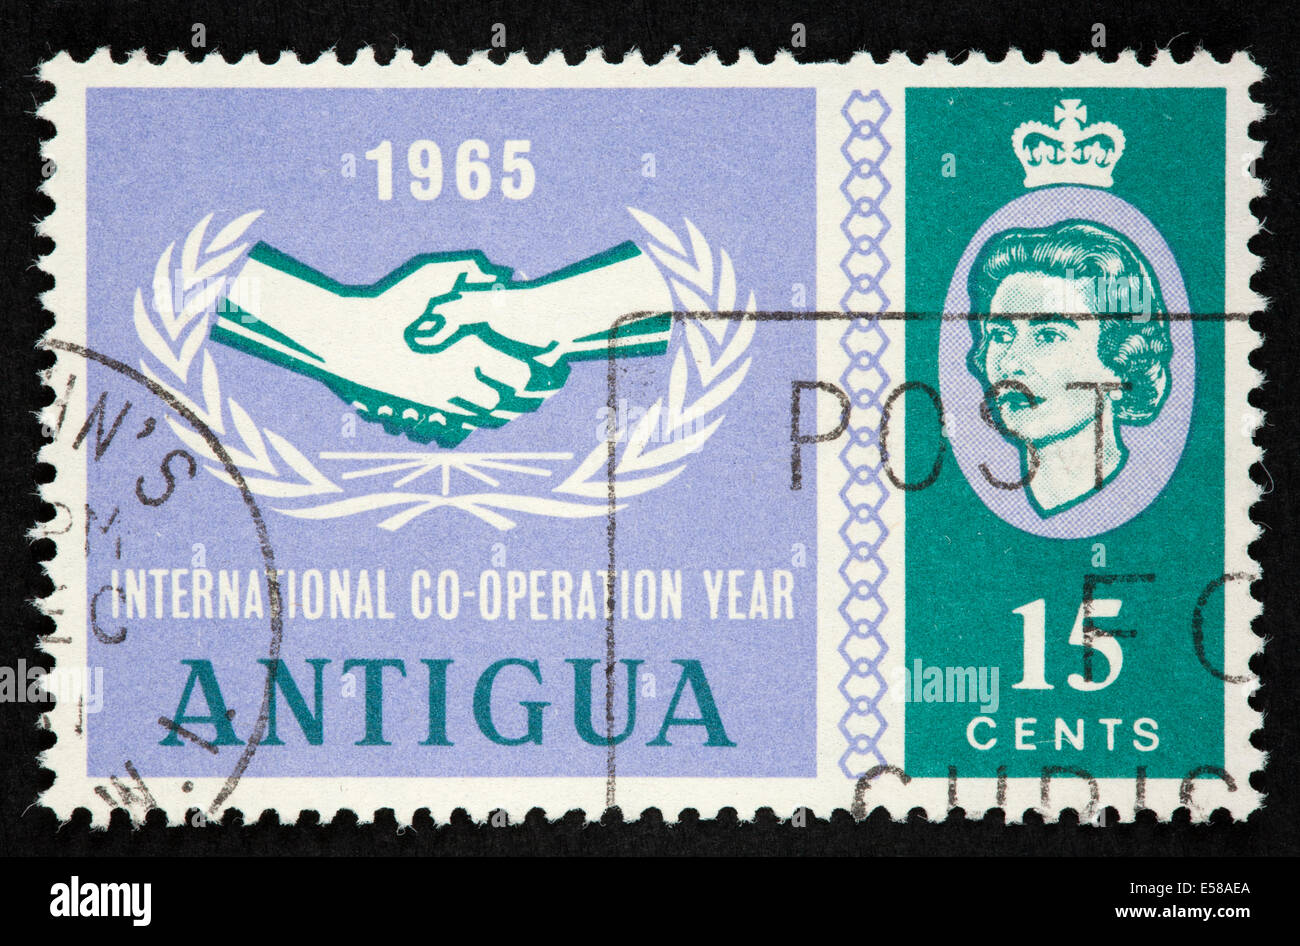 Antigua postage stamp Stock Photo